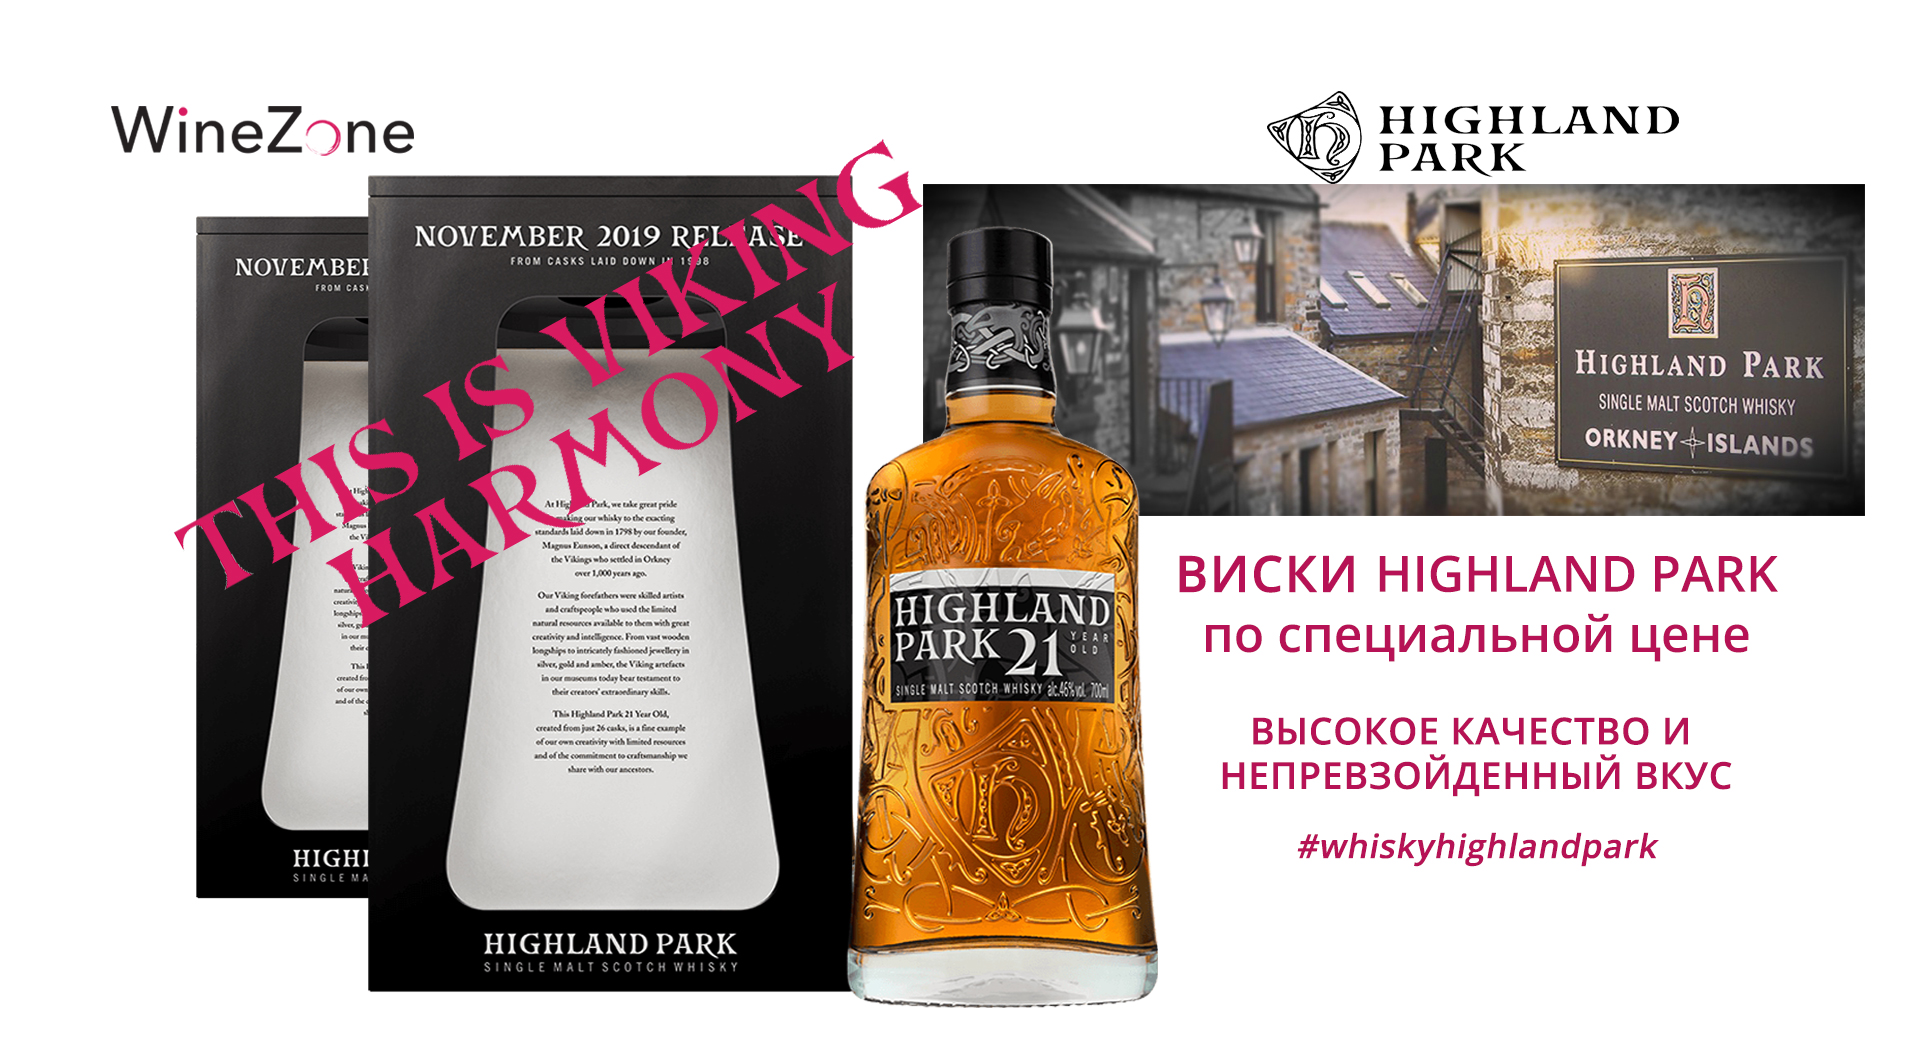 Виски Highland Park по специальной цене!